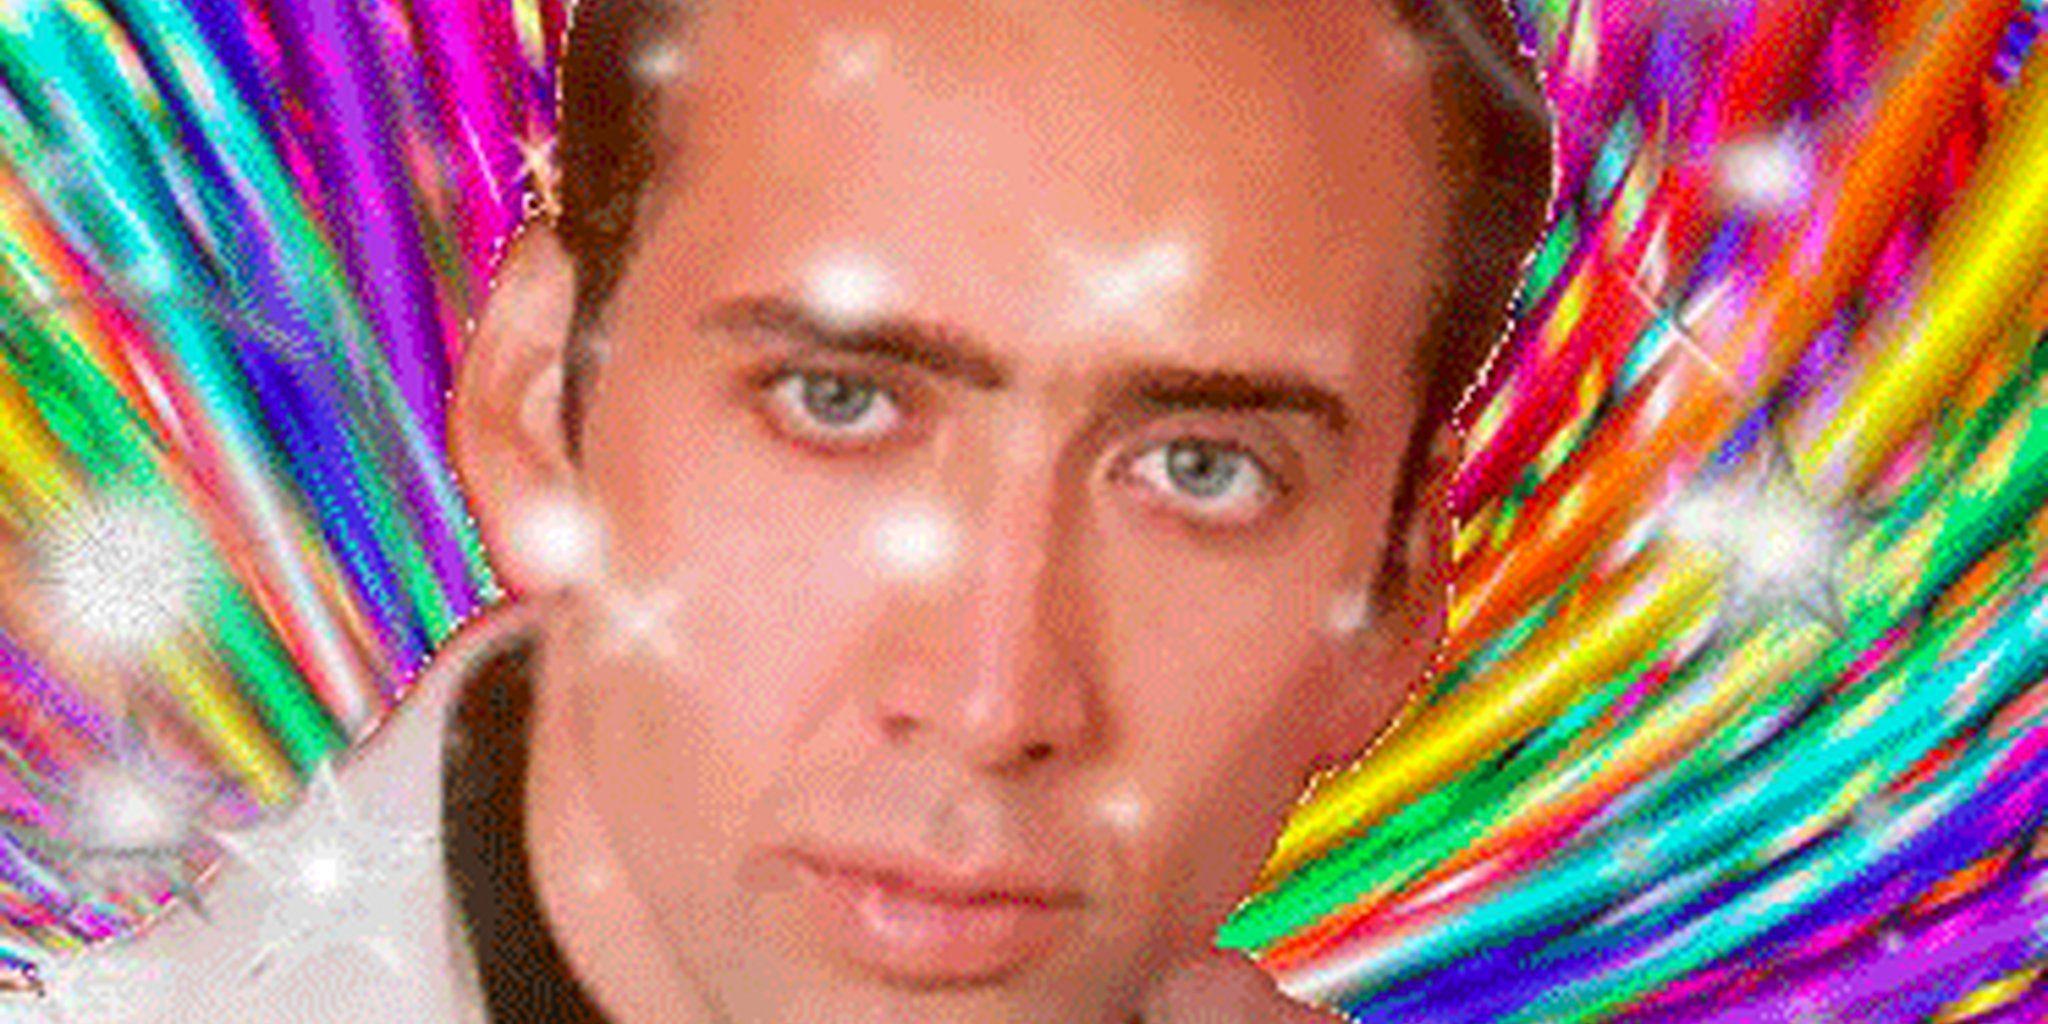 Nicolas Cage GIFs to celebrate Nicolas Cage's 49th birthday